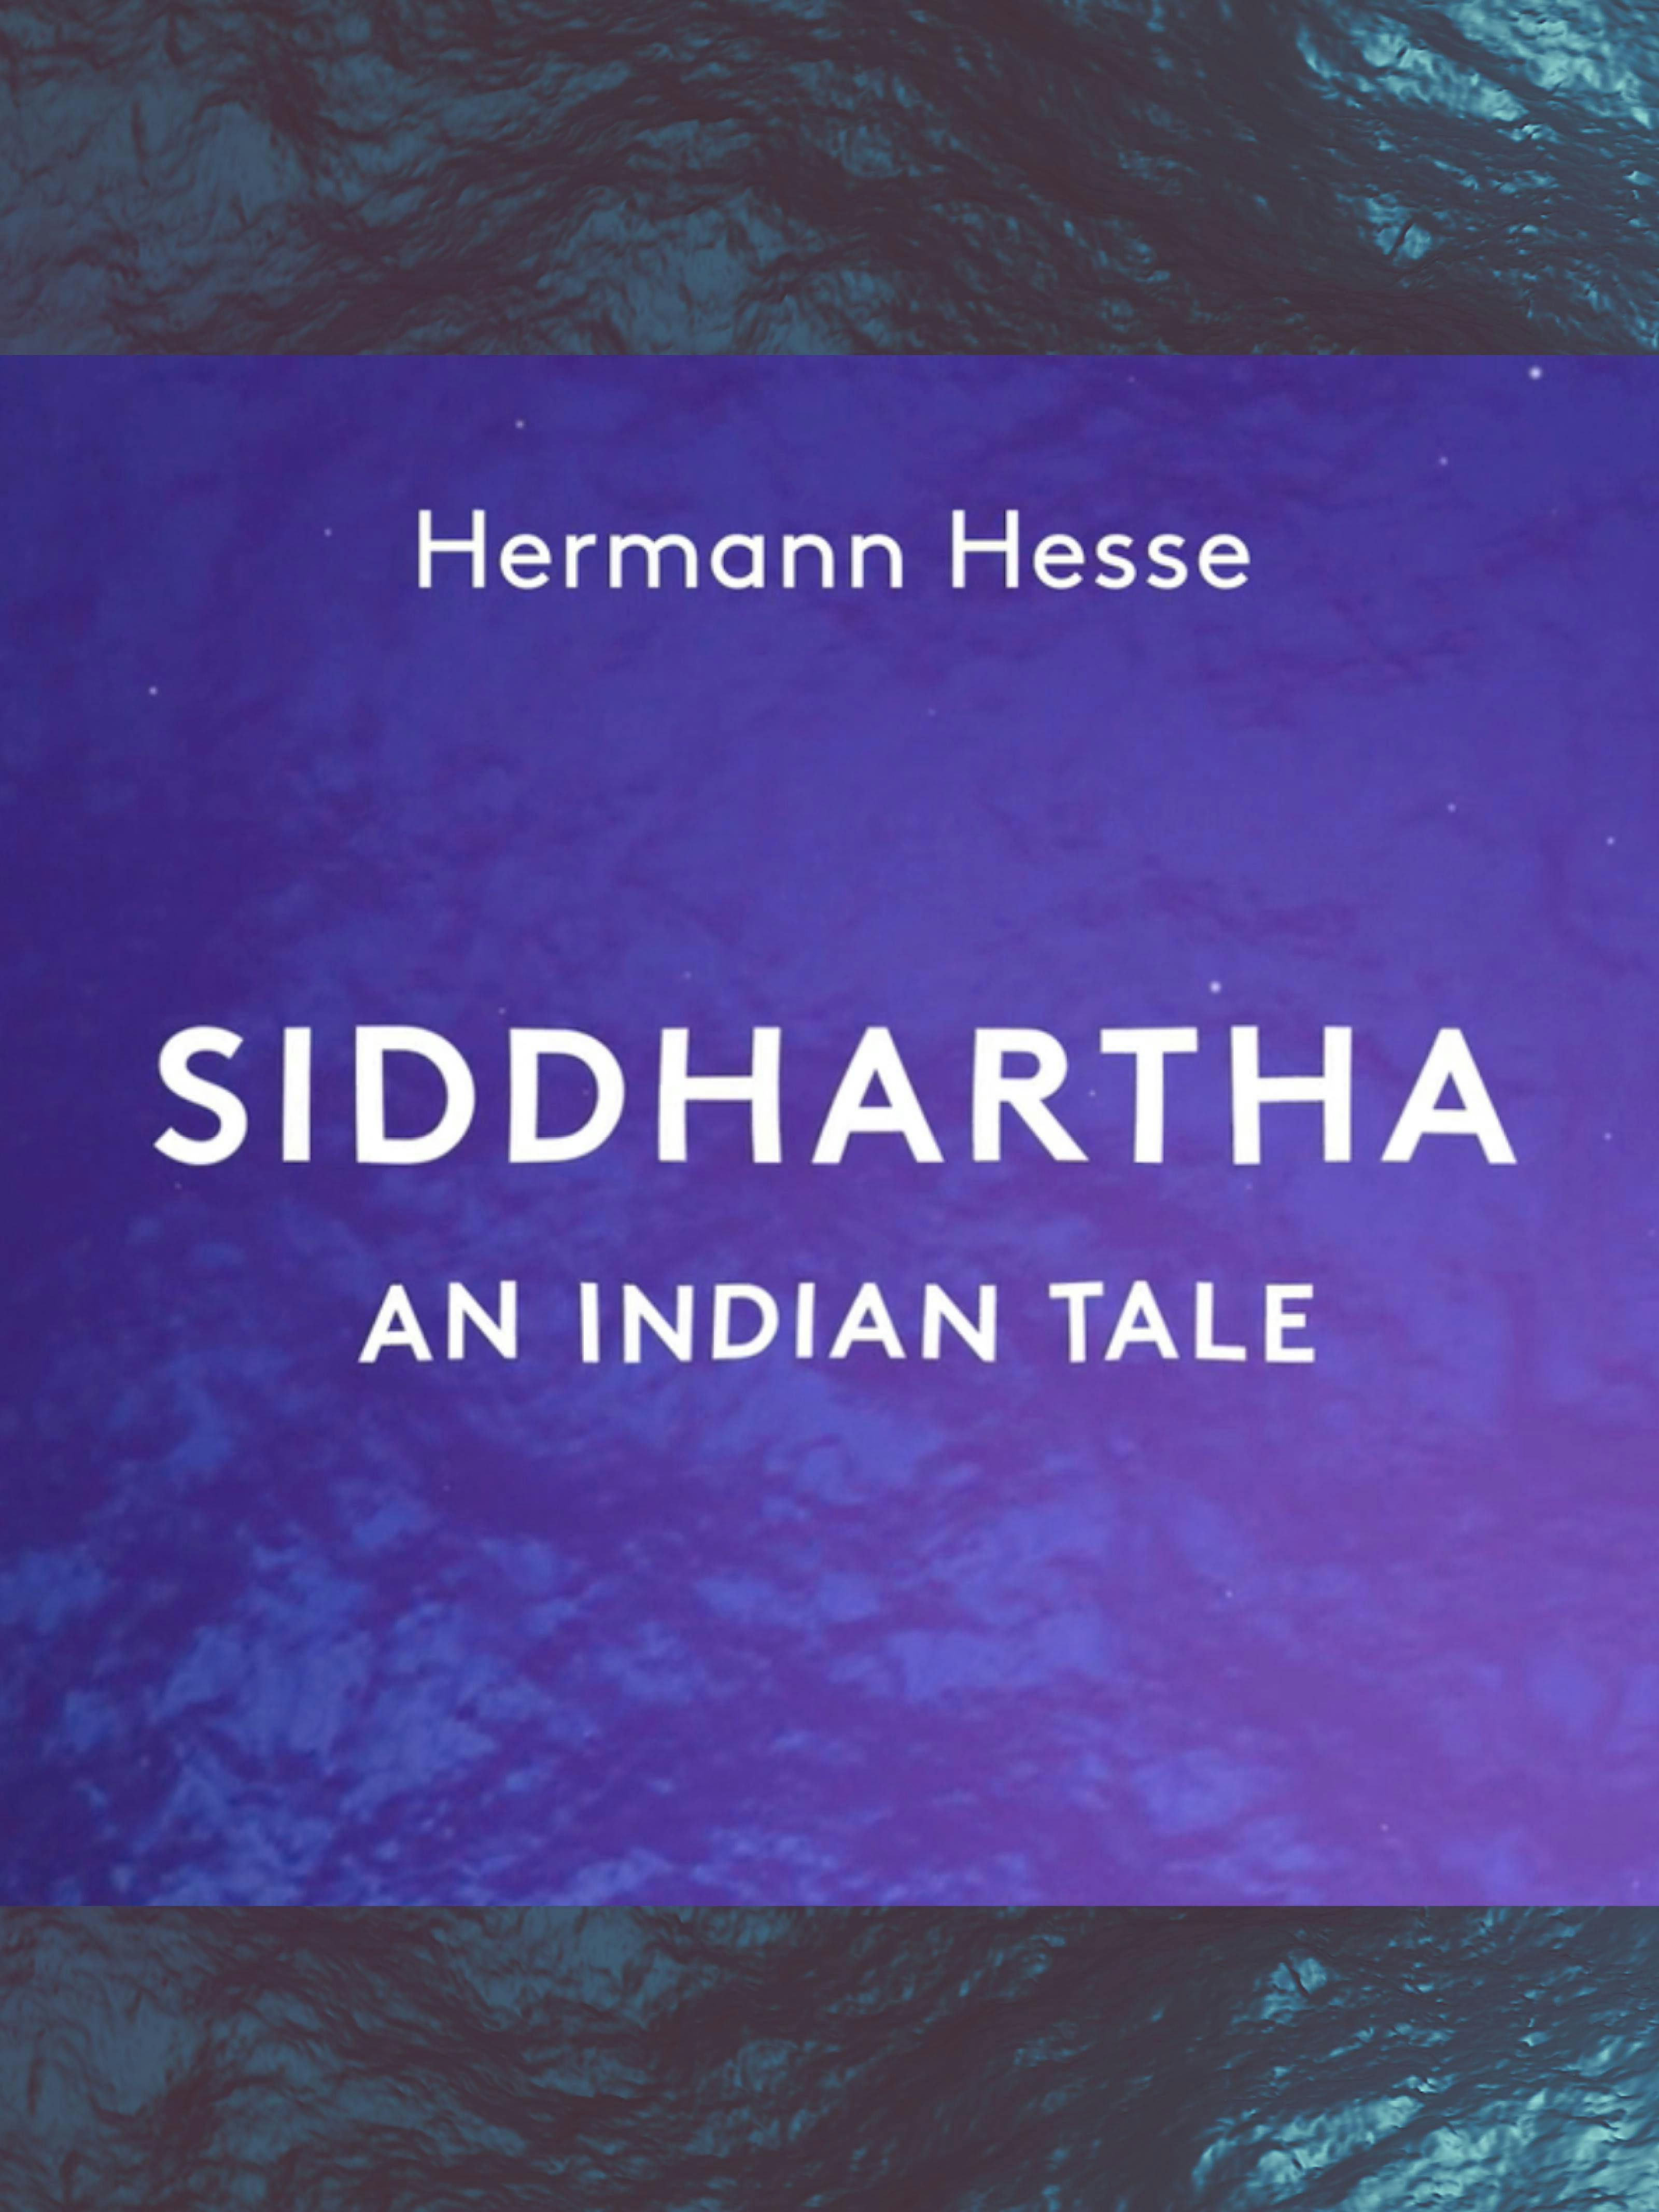 Siddhartha: unabridged narration - undefined